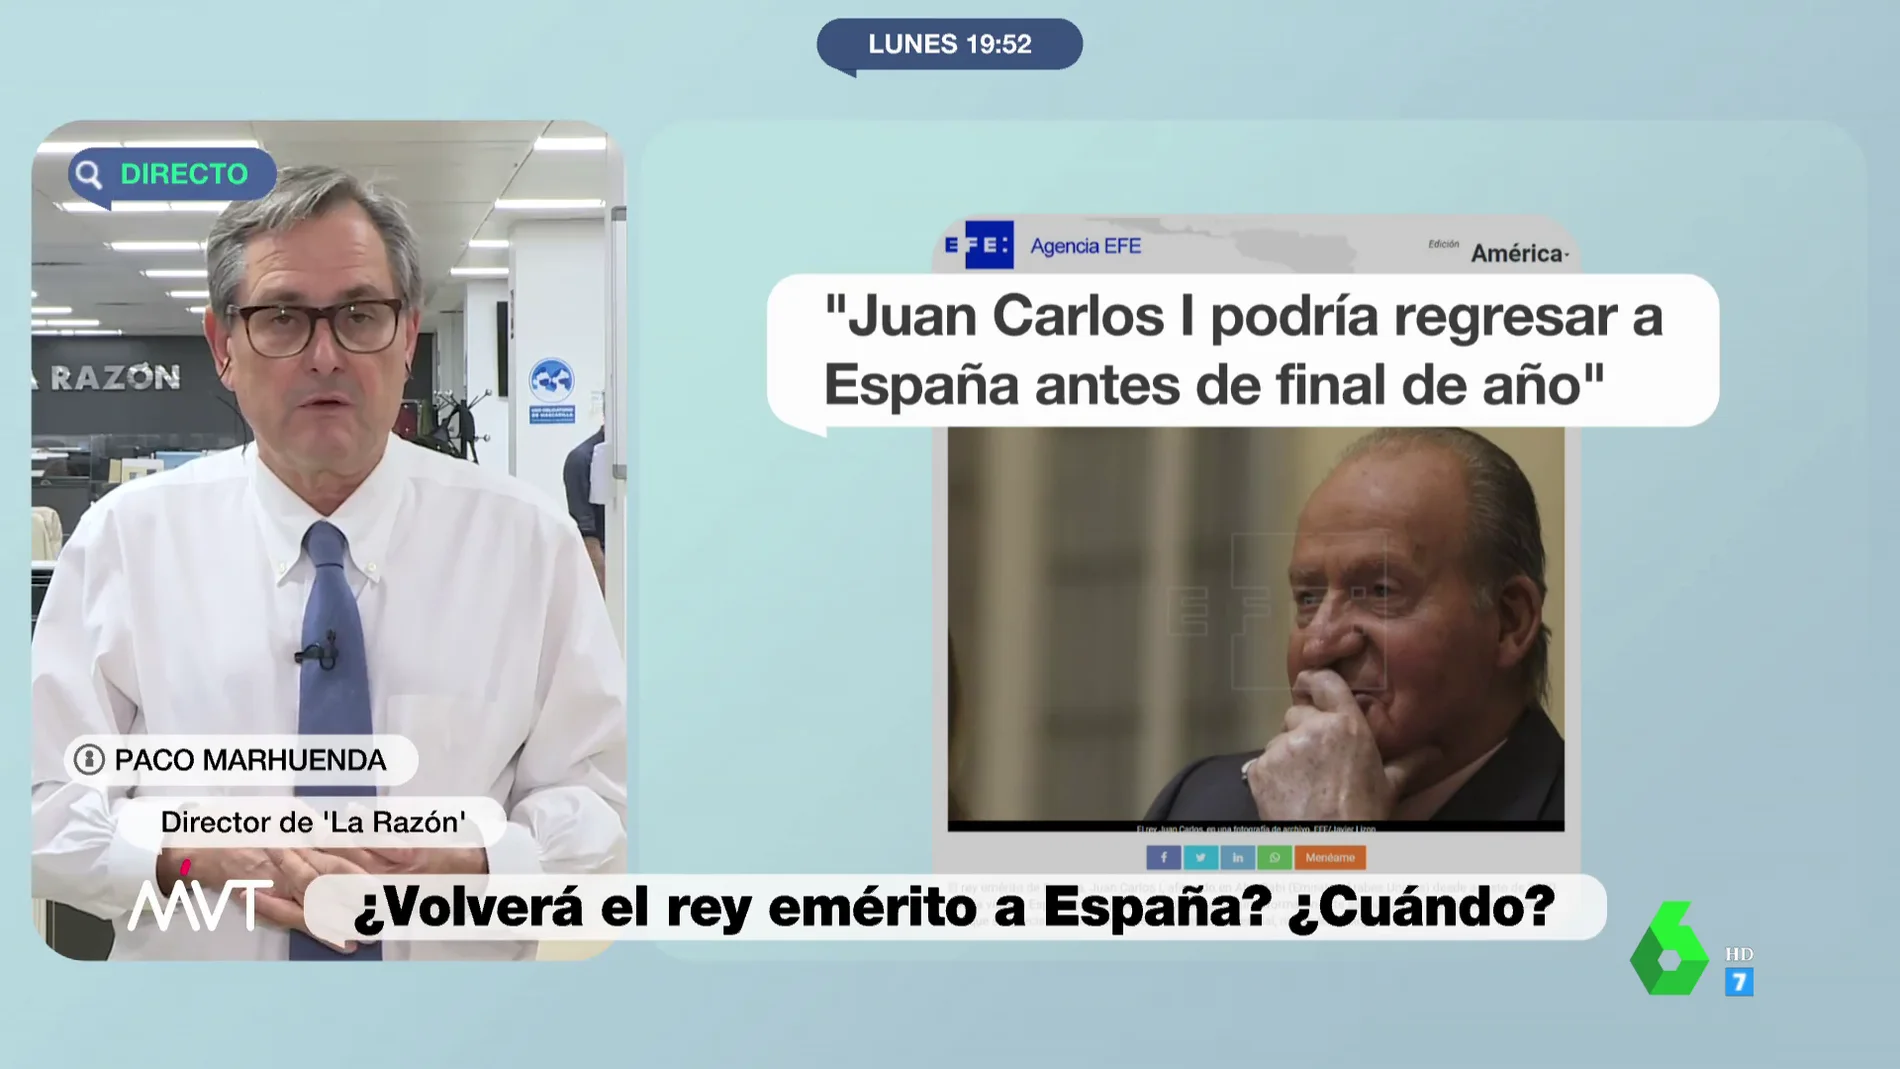 Francisco Marhuenda descarta un viaje inminente de Juan Carlos I a España: "No tiene absolutamente nada decidido"